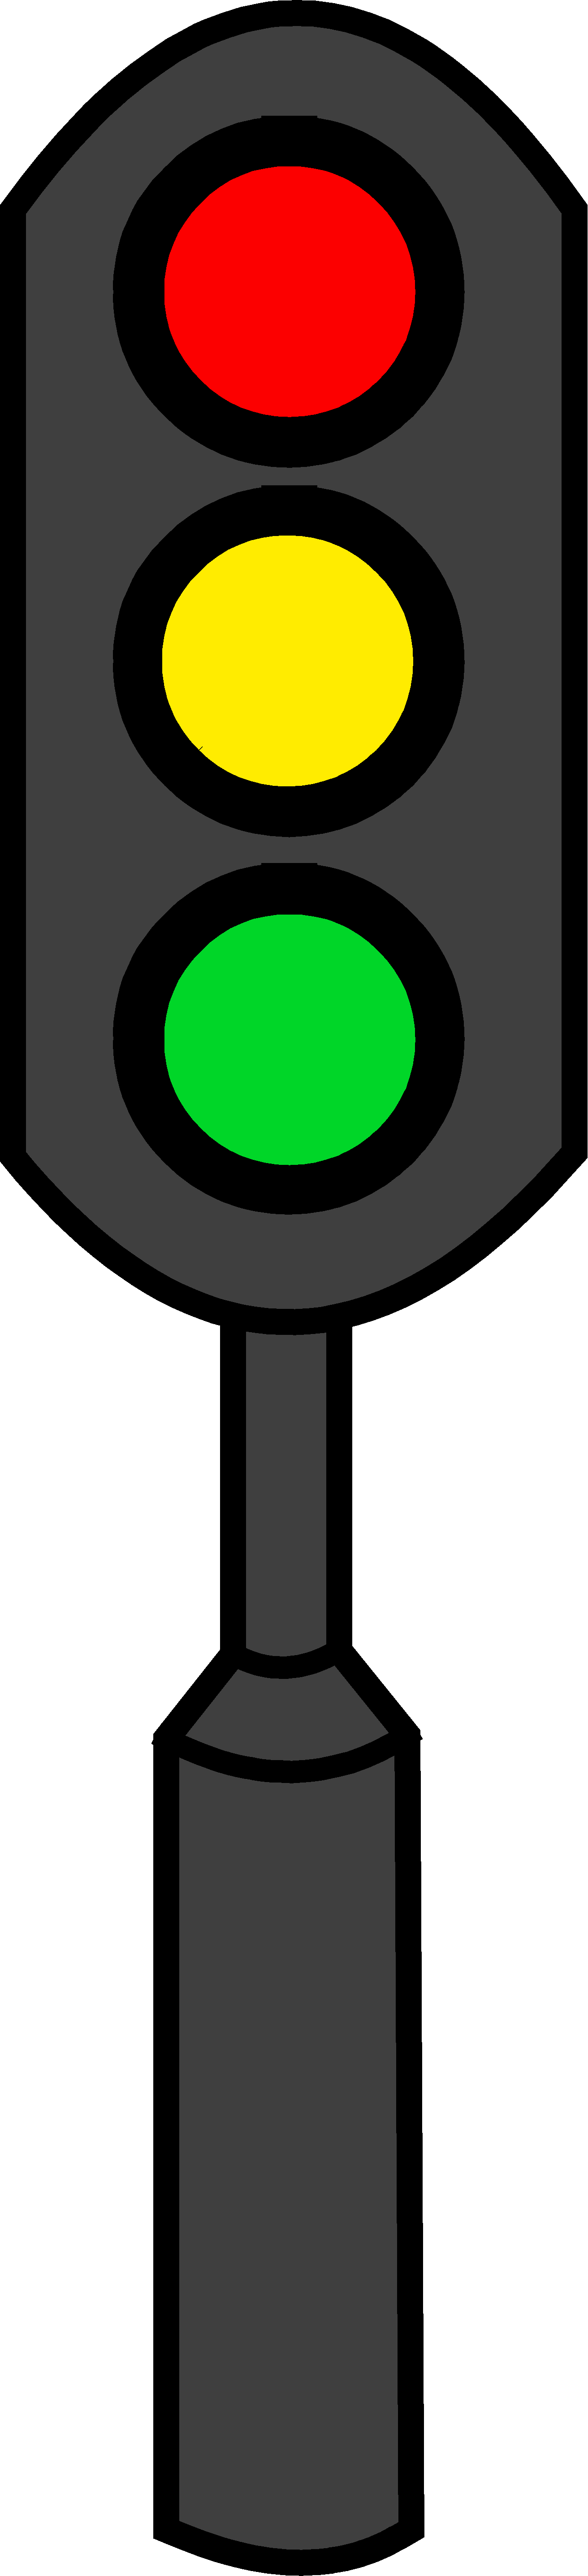 Stop Light Cartoon - Traffic Light Clip Art Png (1312x5743)